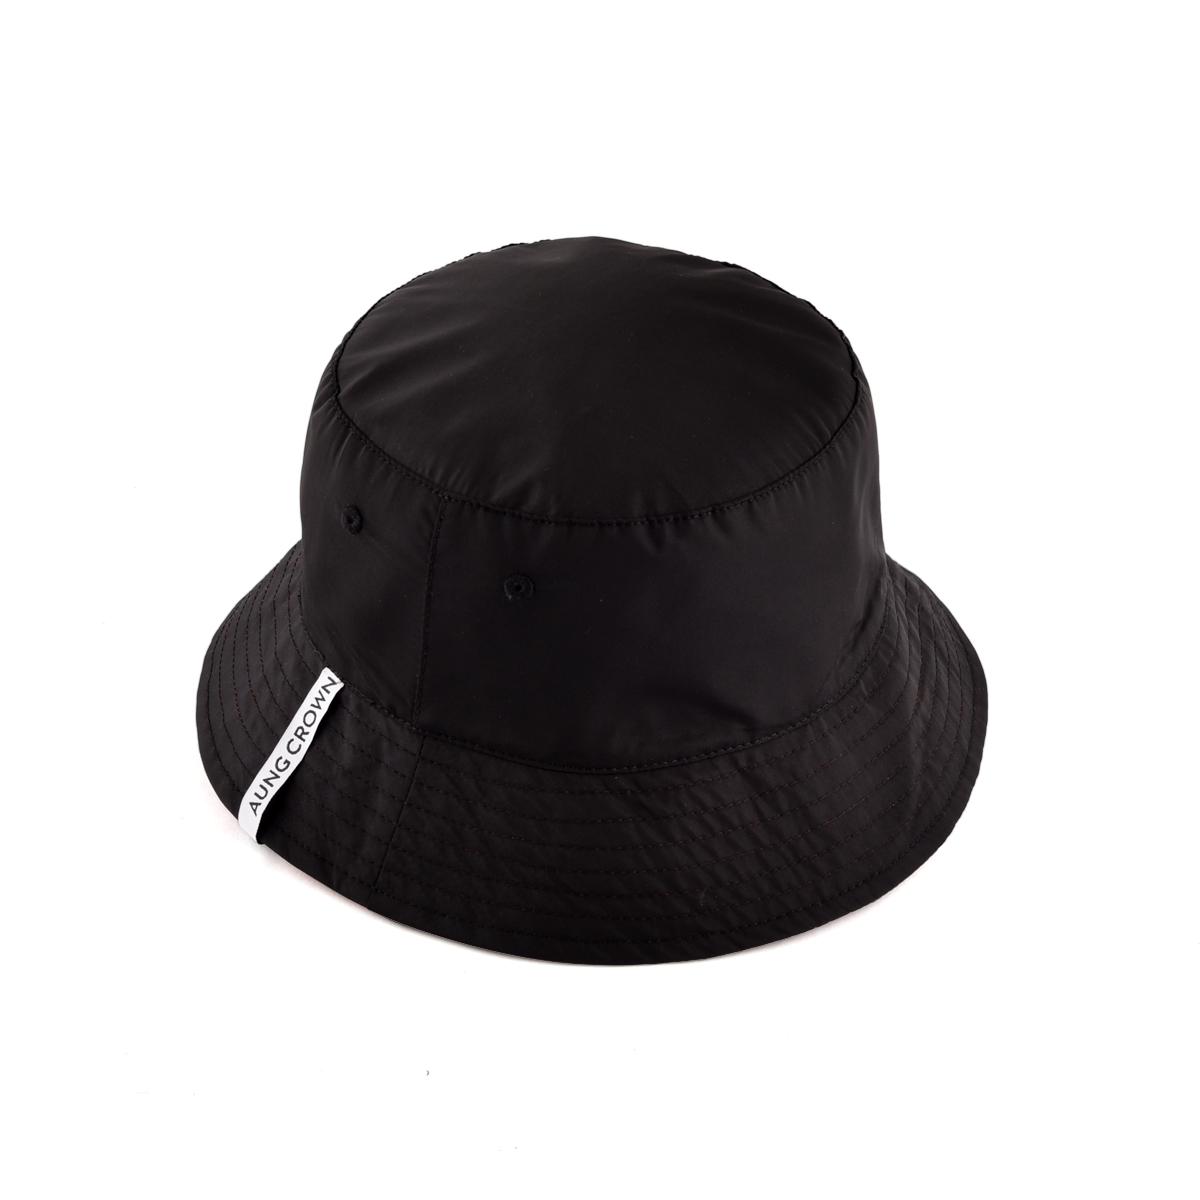 AungCrown wide brim simple plain black windproof bucket hat